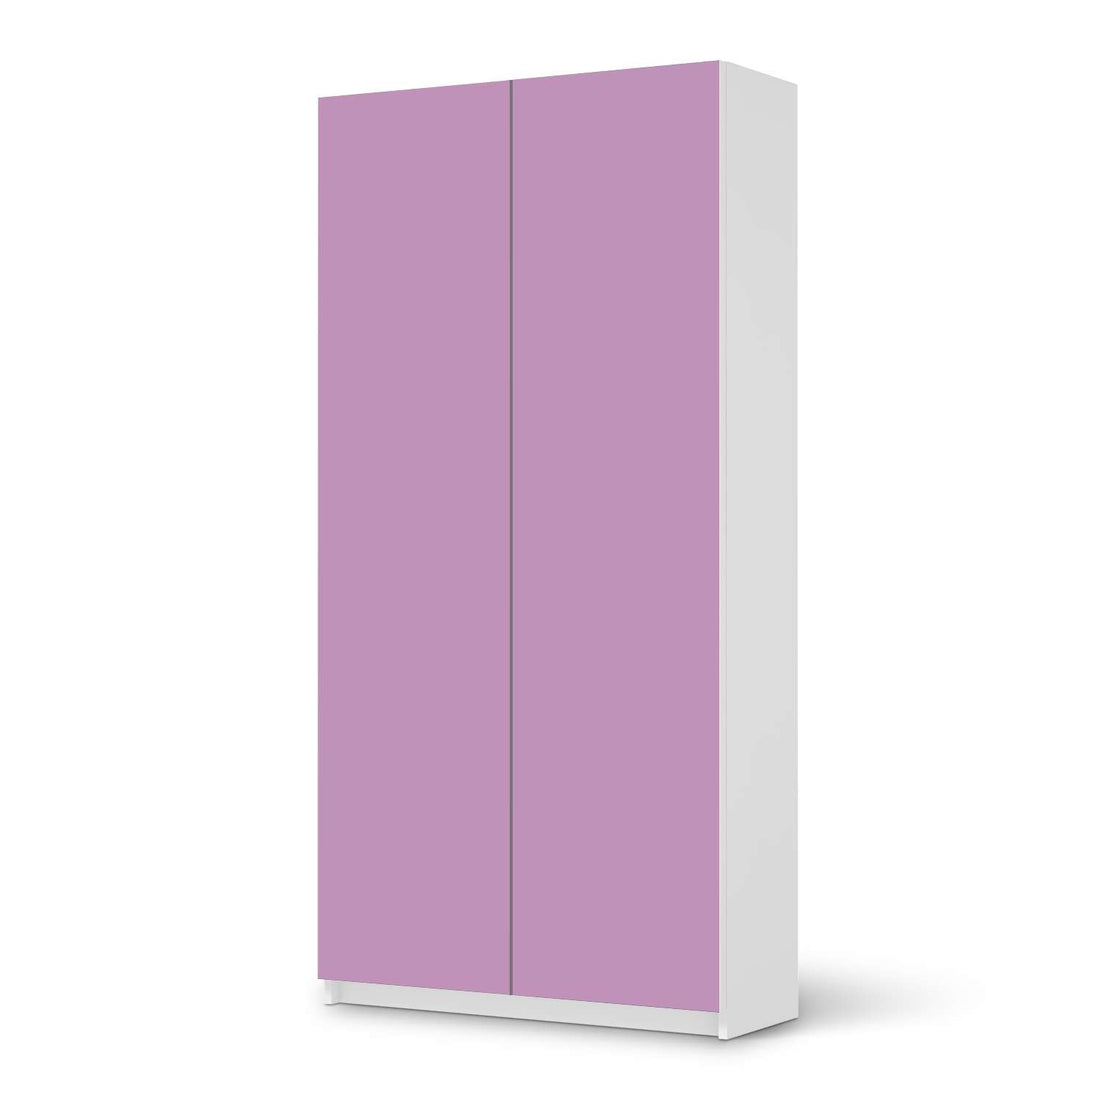 Klebefolie für Möbel Flieder Light - IKEA Pax Schrank 201 cm Höhe - 2 Türen - weiss